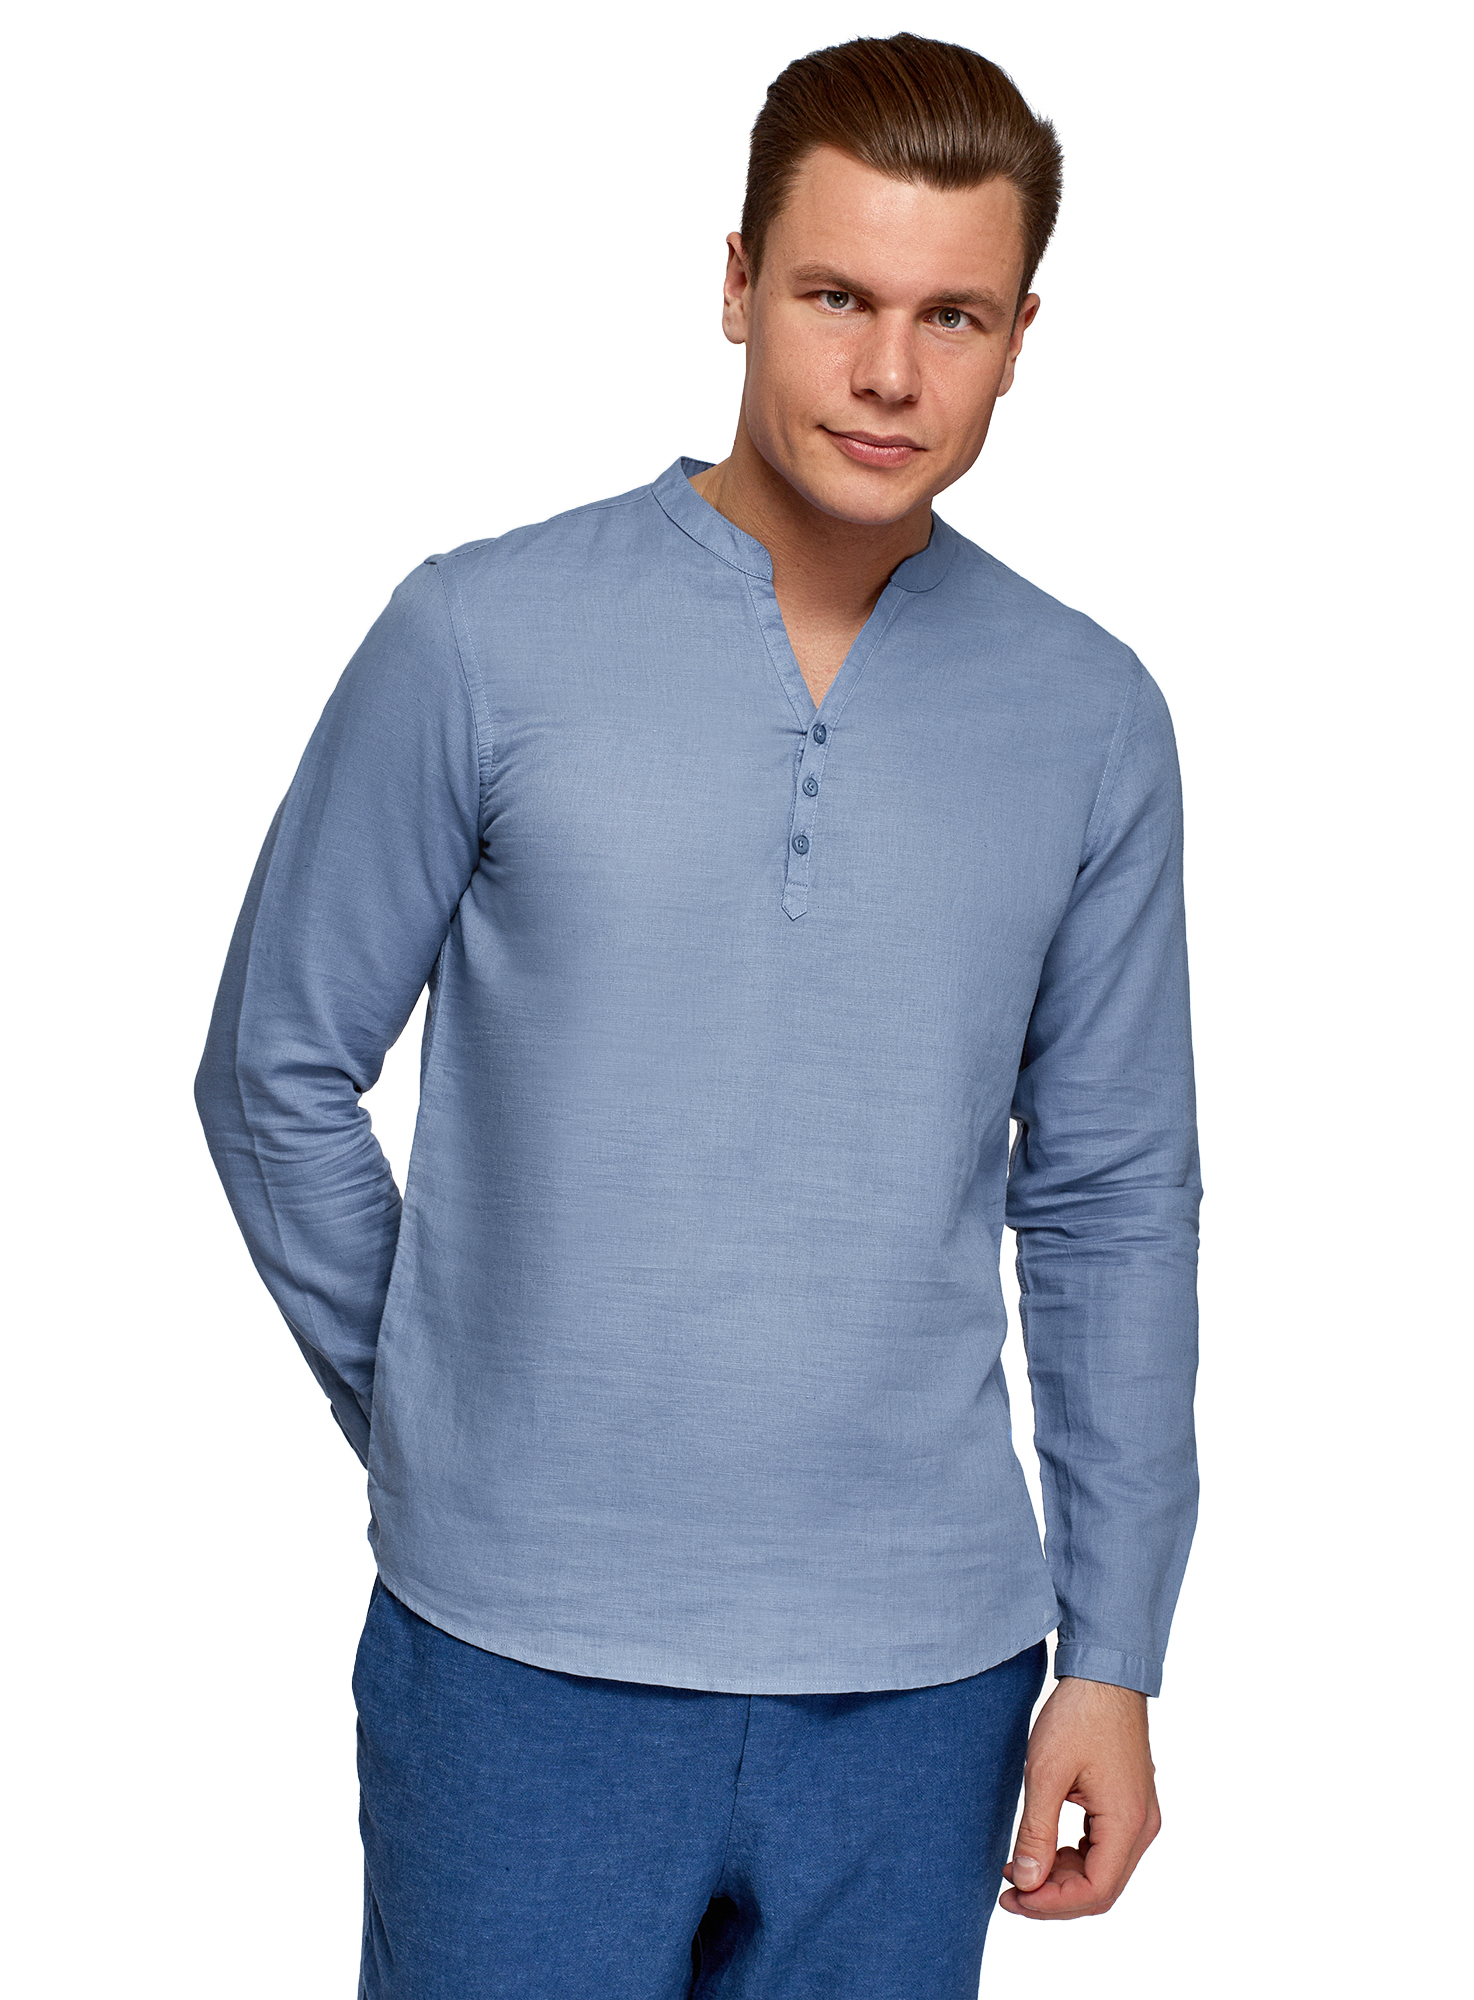 Рубашка мужская oodji 3B320002M-1 синяя 2XL